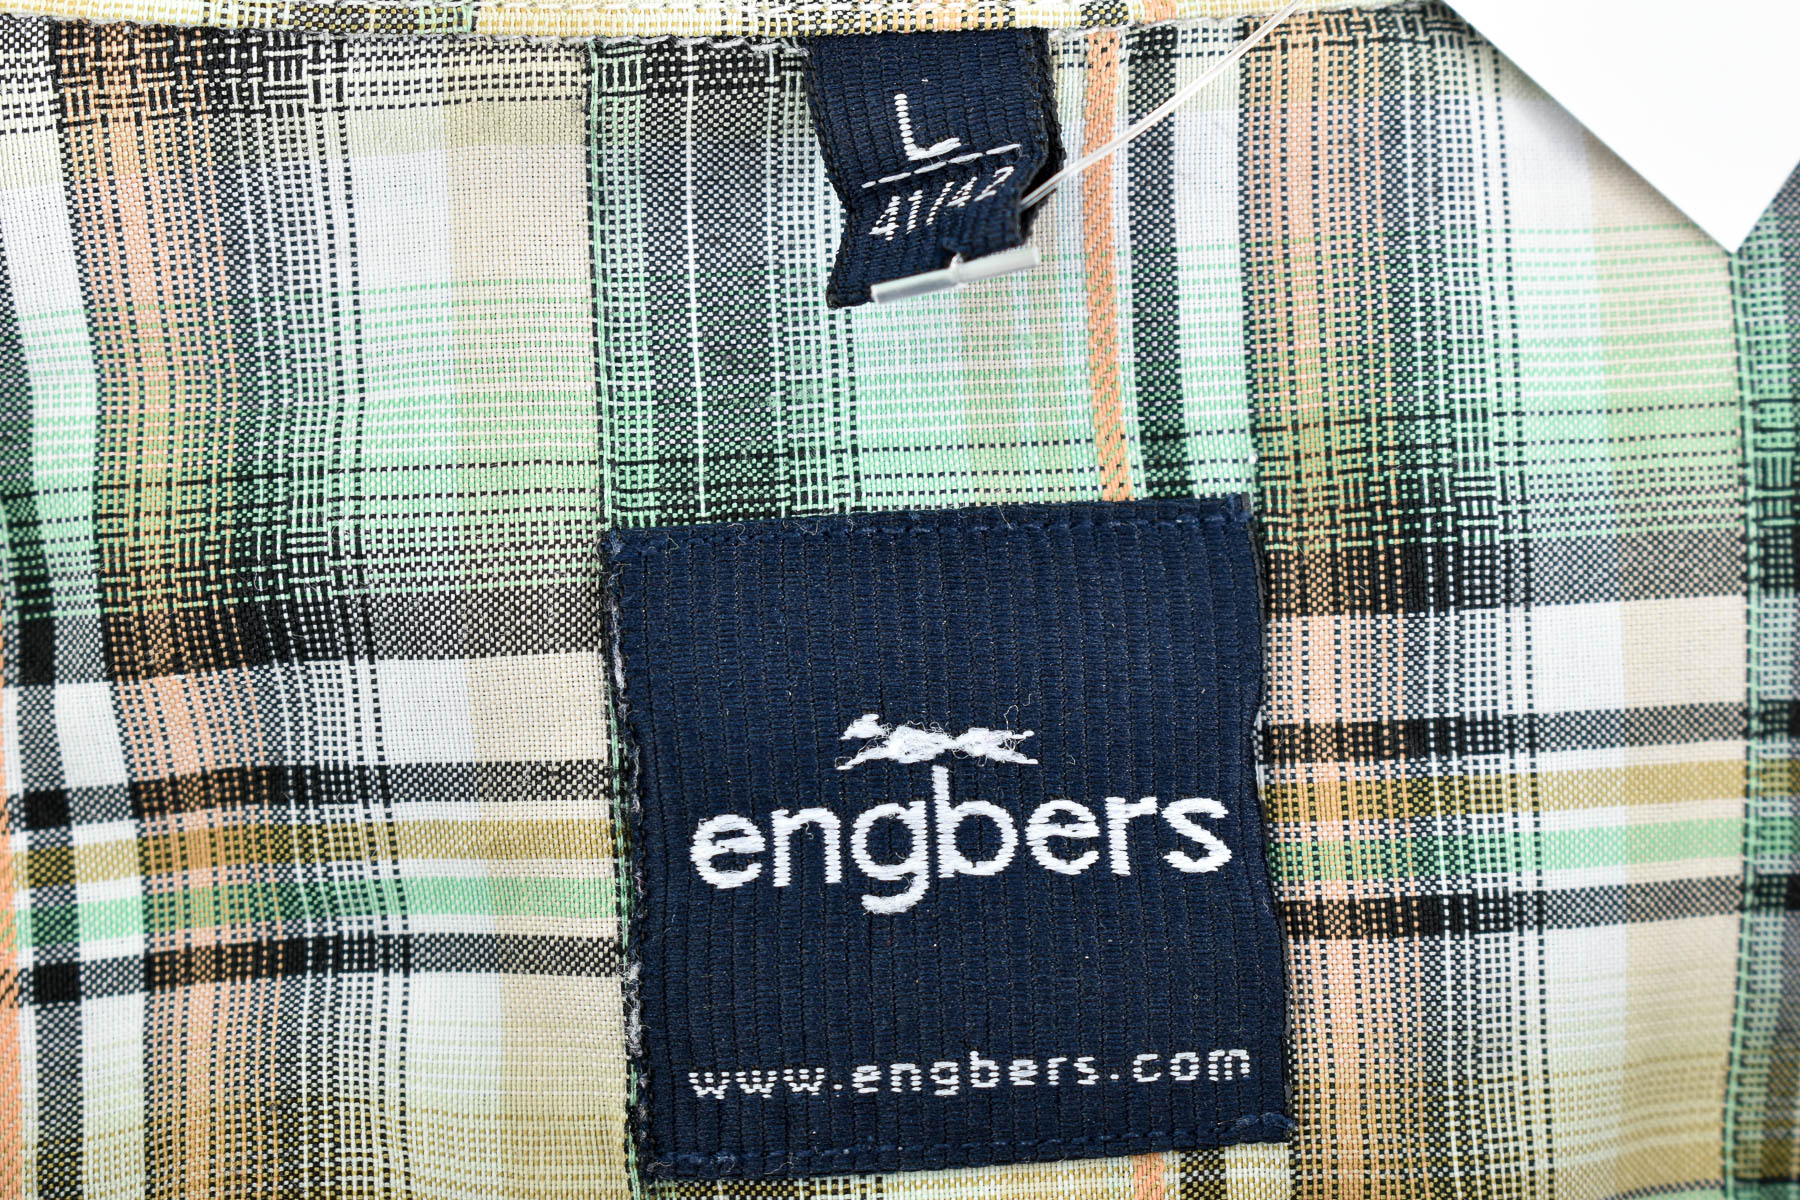 Ανδρικό πουκάμισο - Engbers - 2